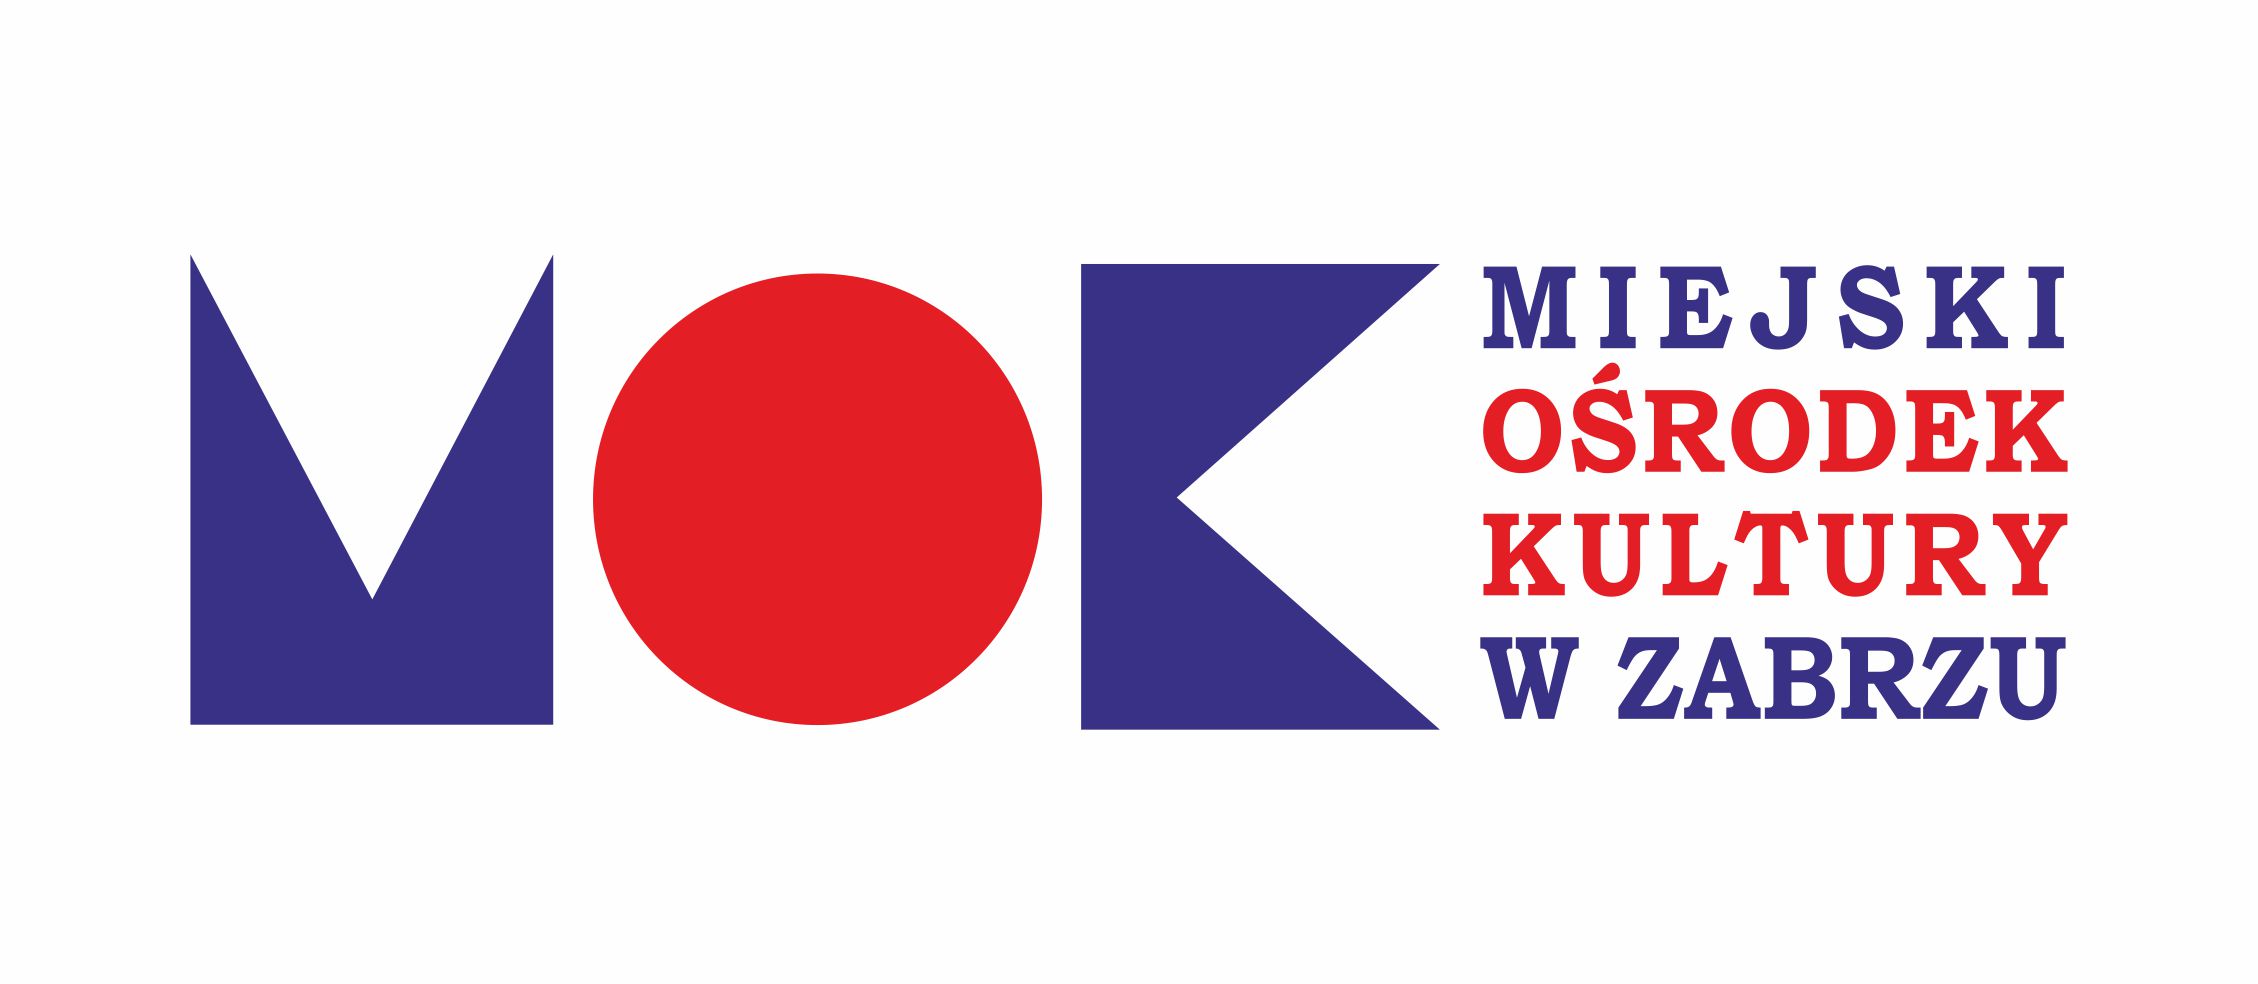 logo MOK